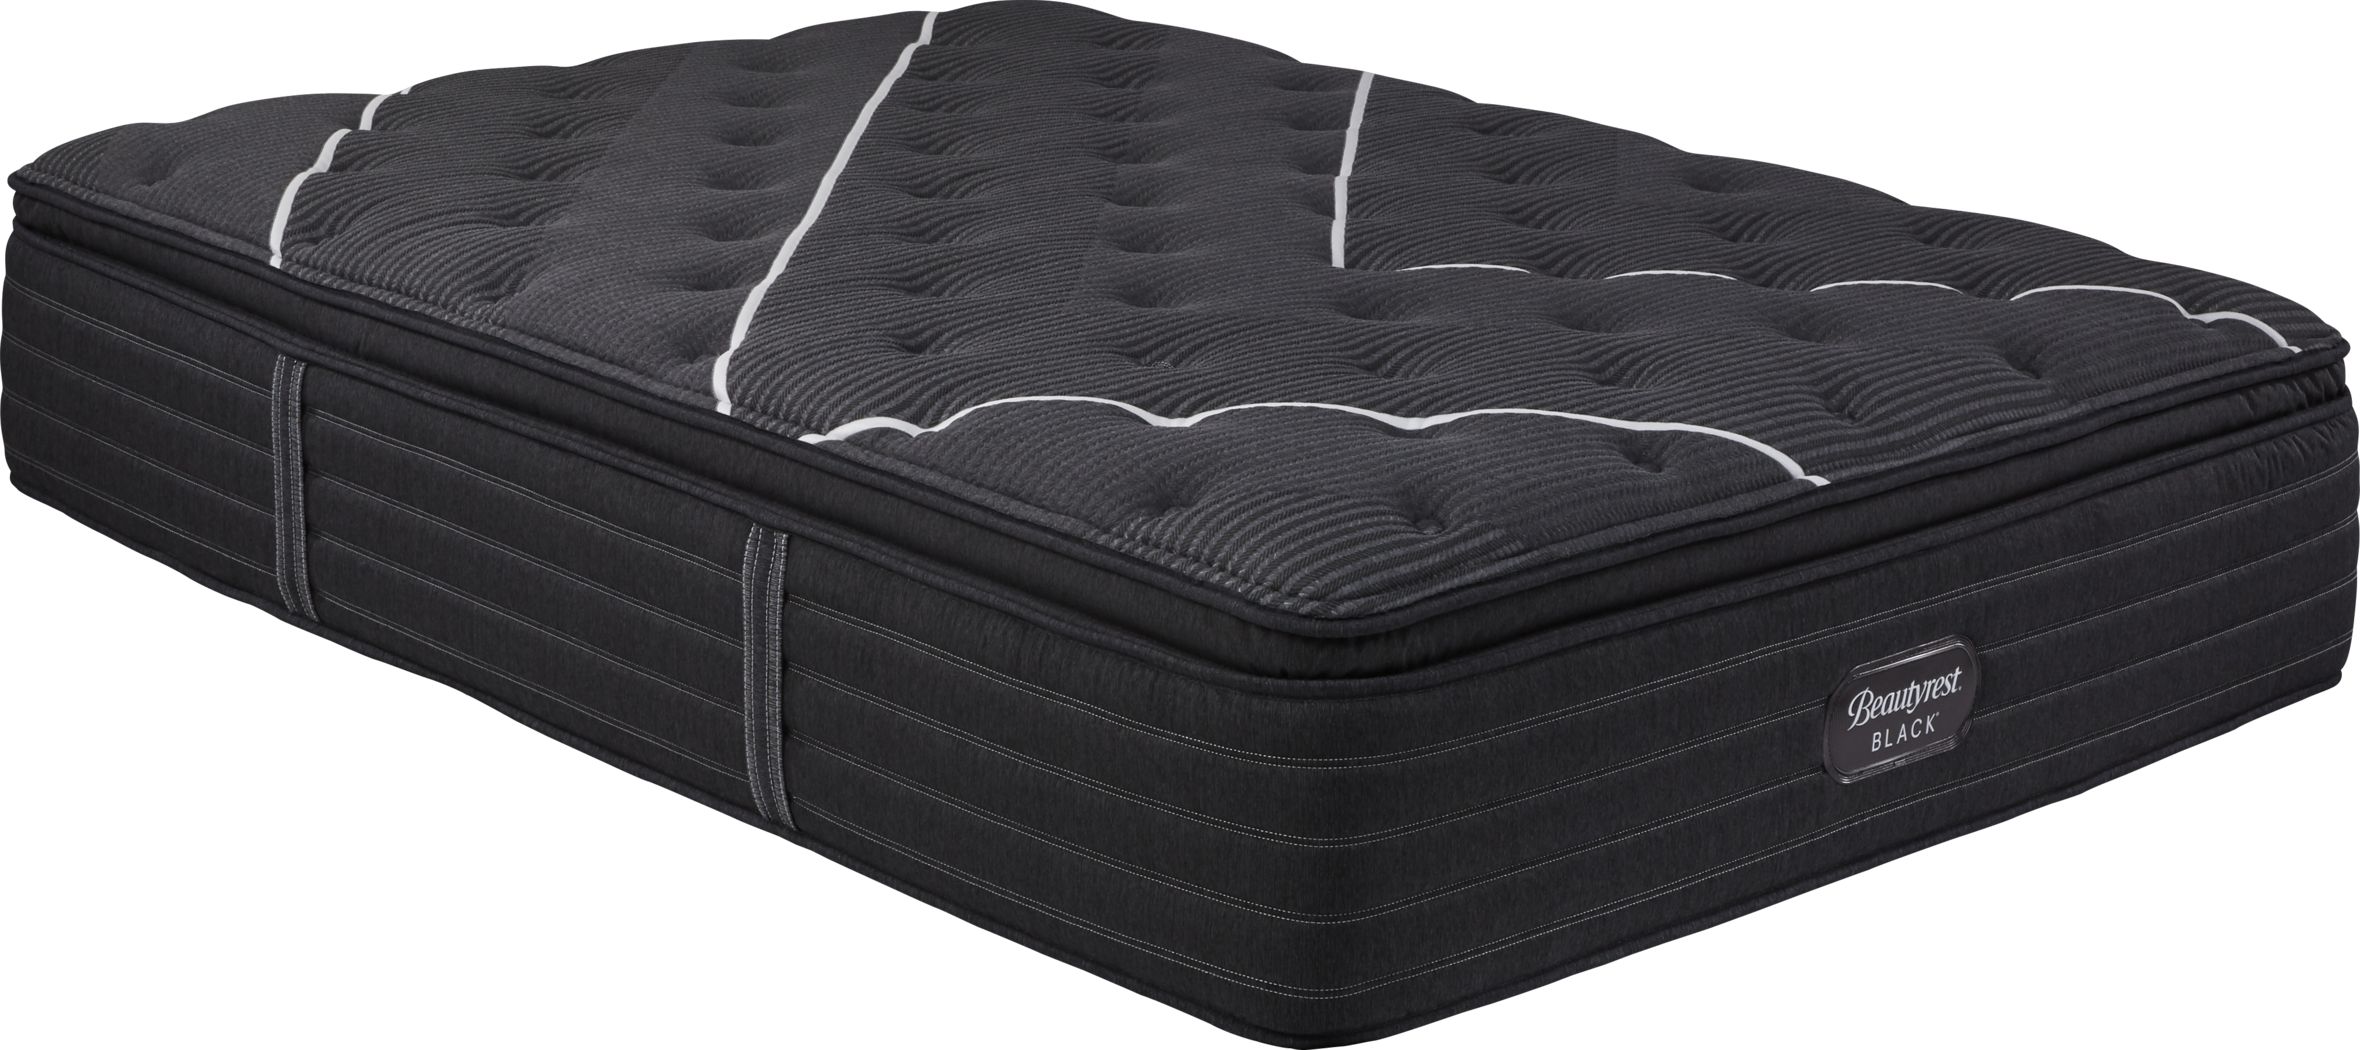 black beauty pillow top mattress